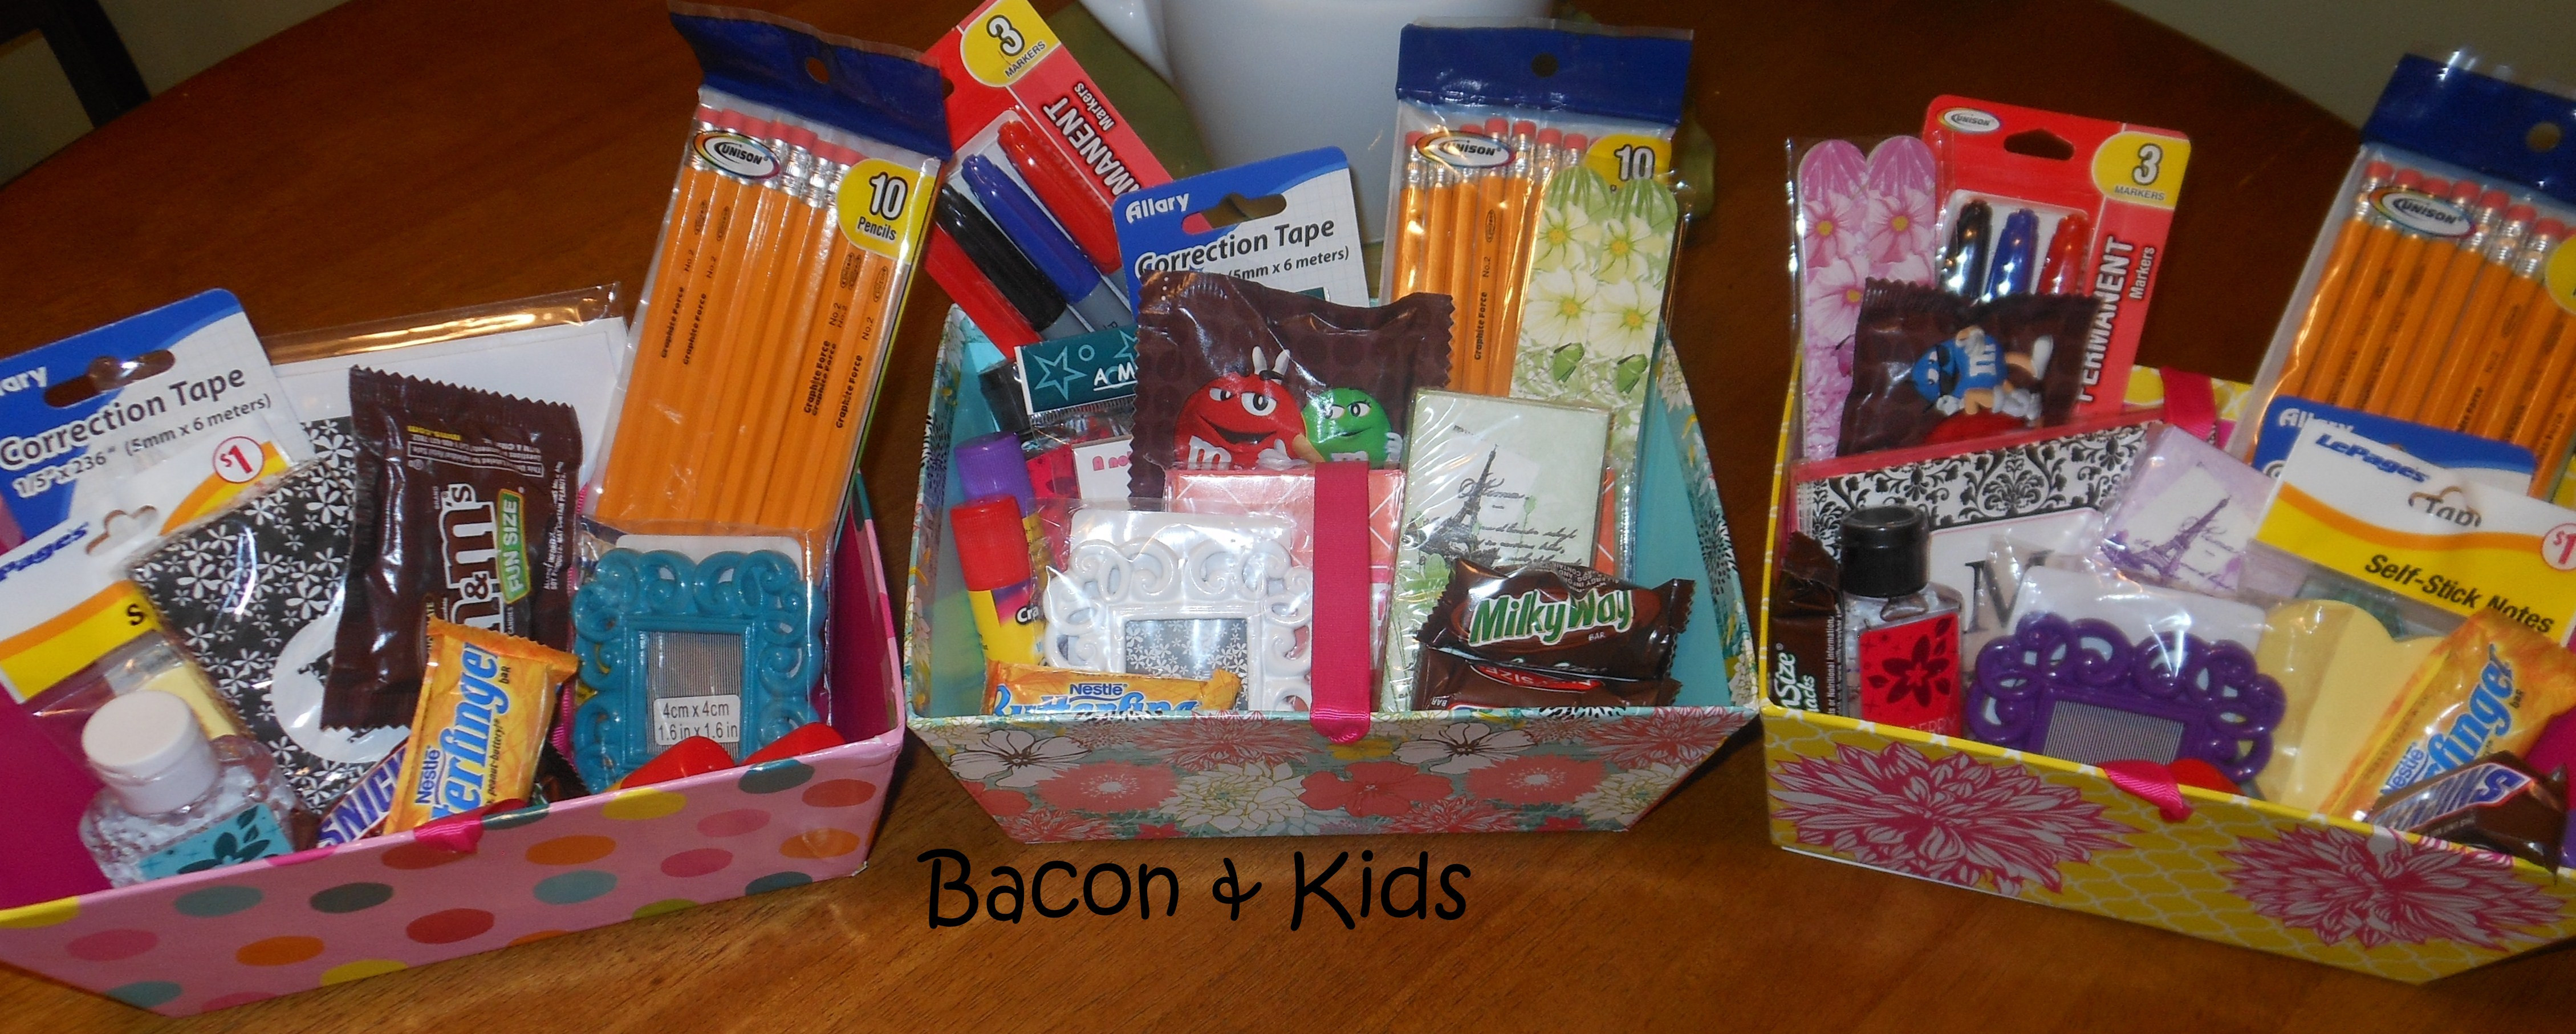 Teacher Gift Baskets Ideas
 teacher appreciation week